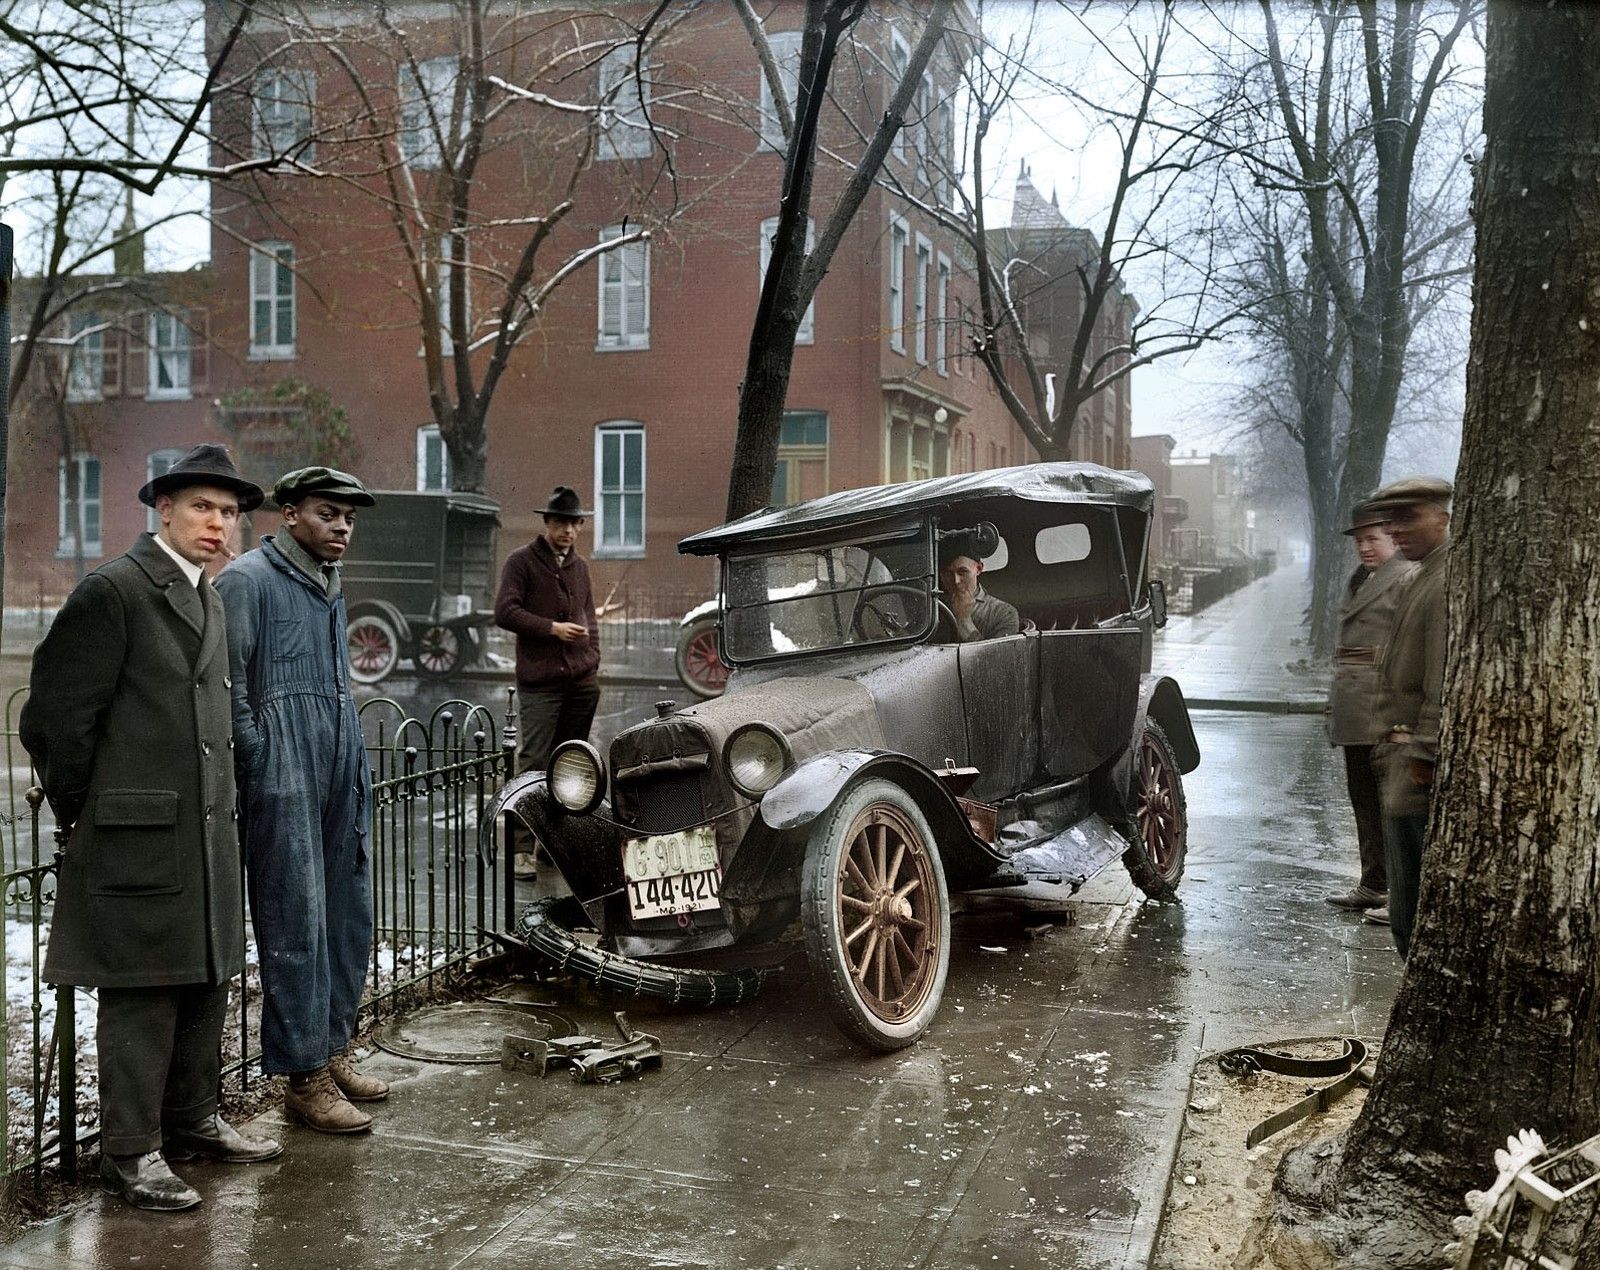 James May's first car crash, circa 1920